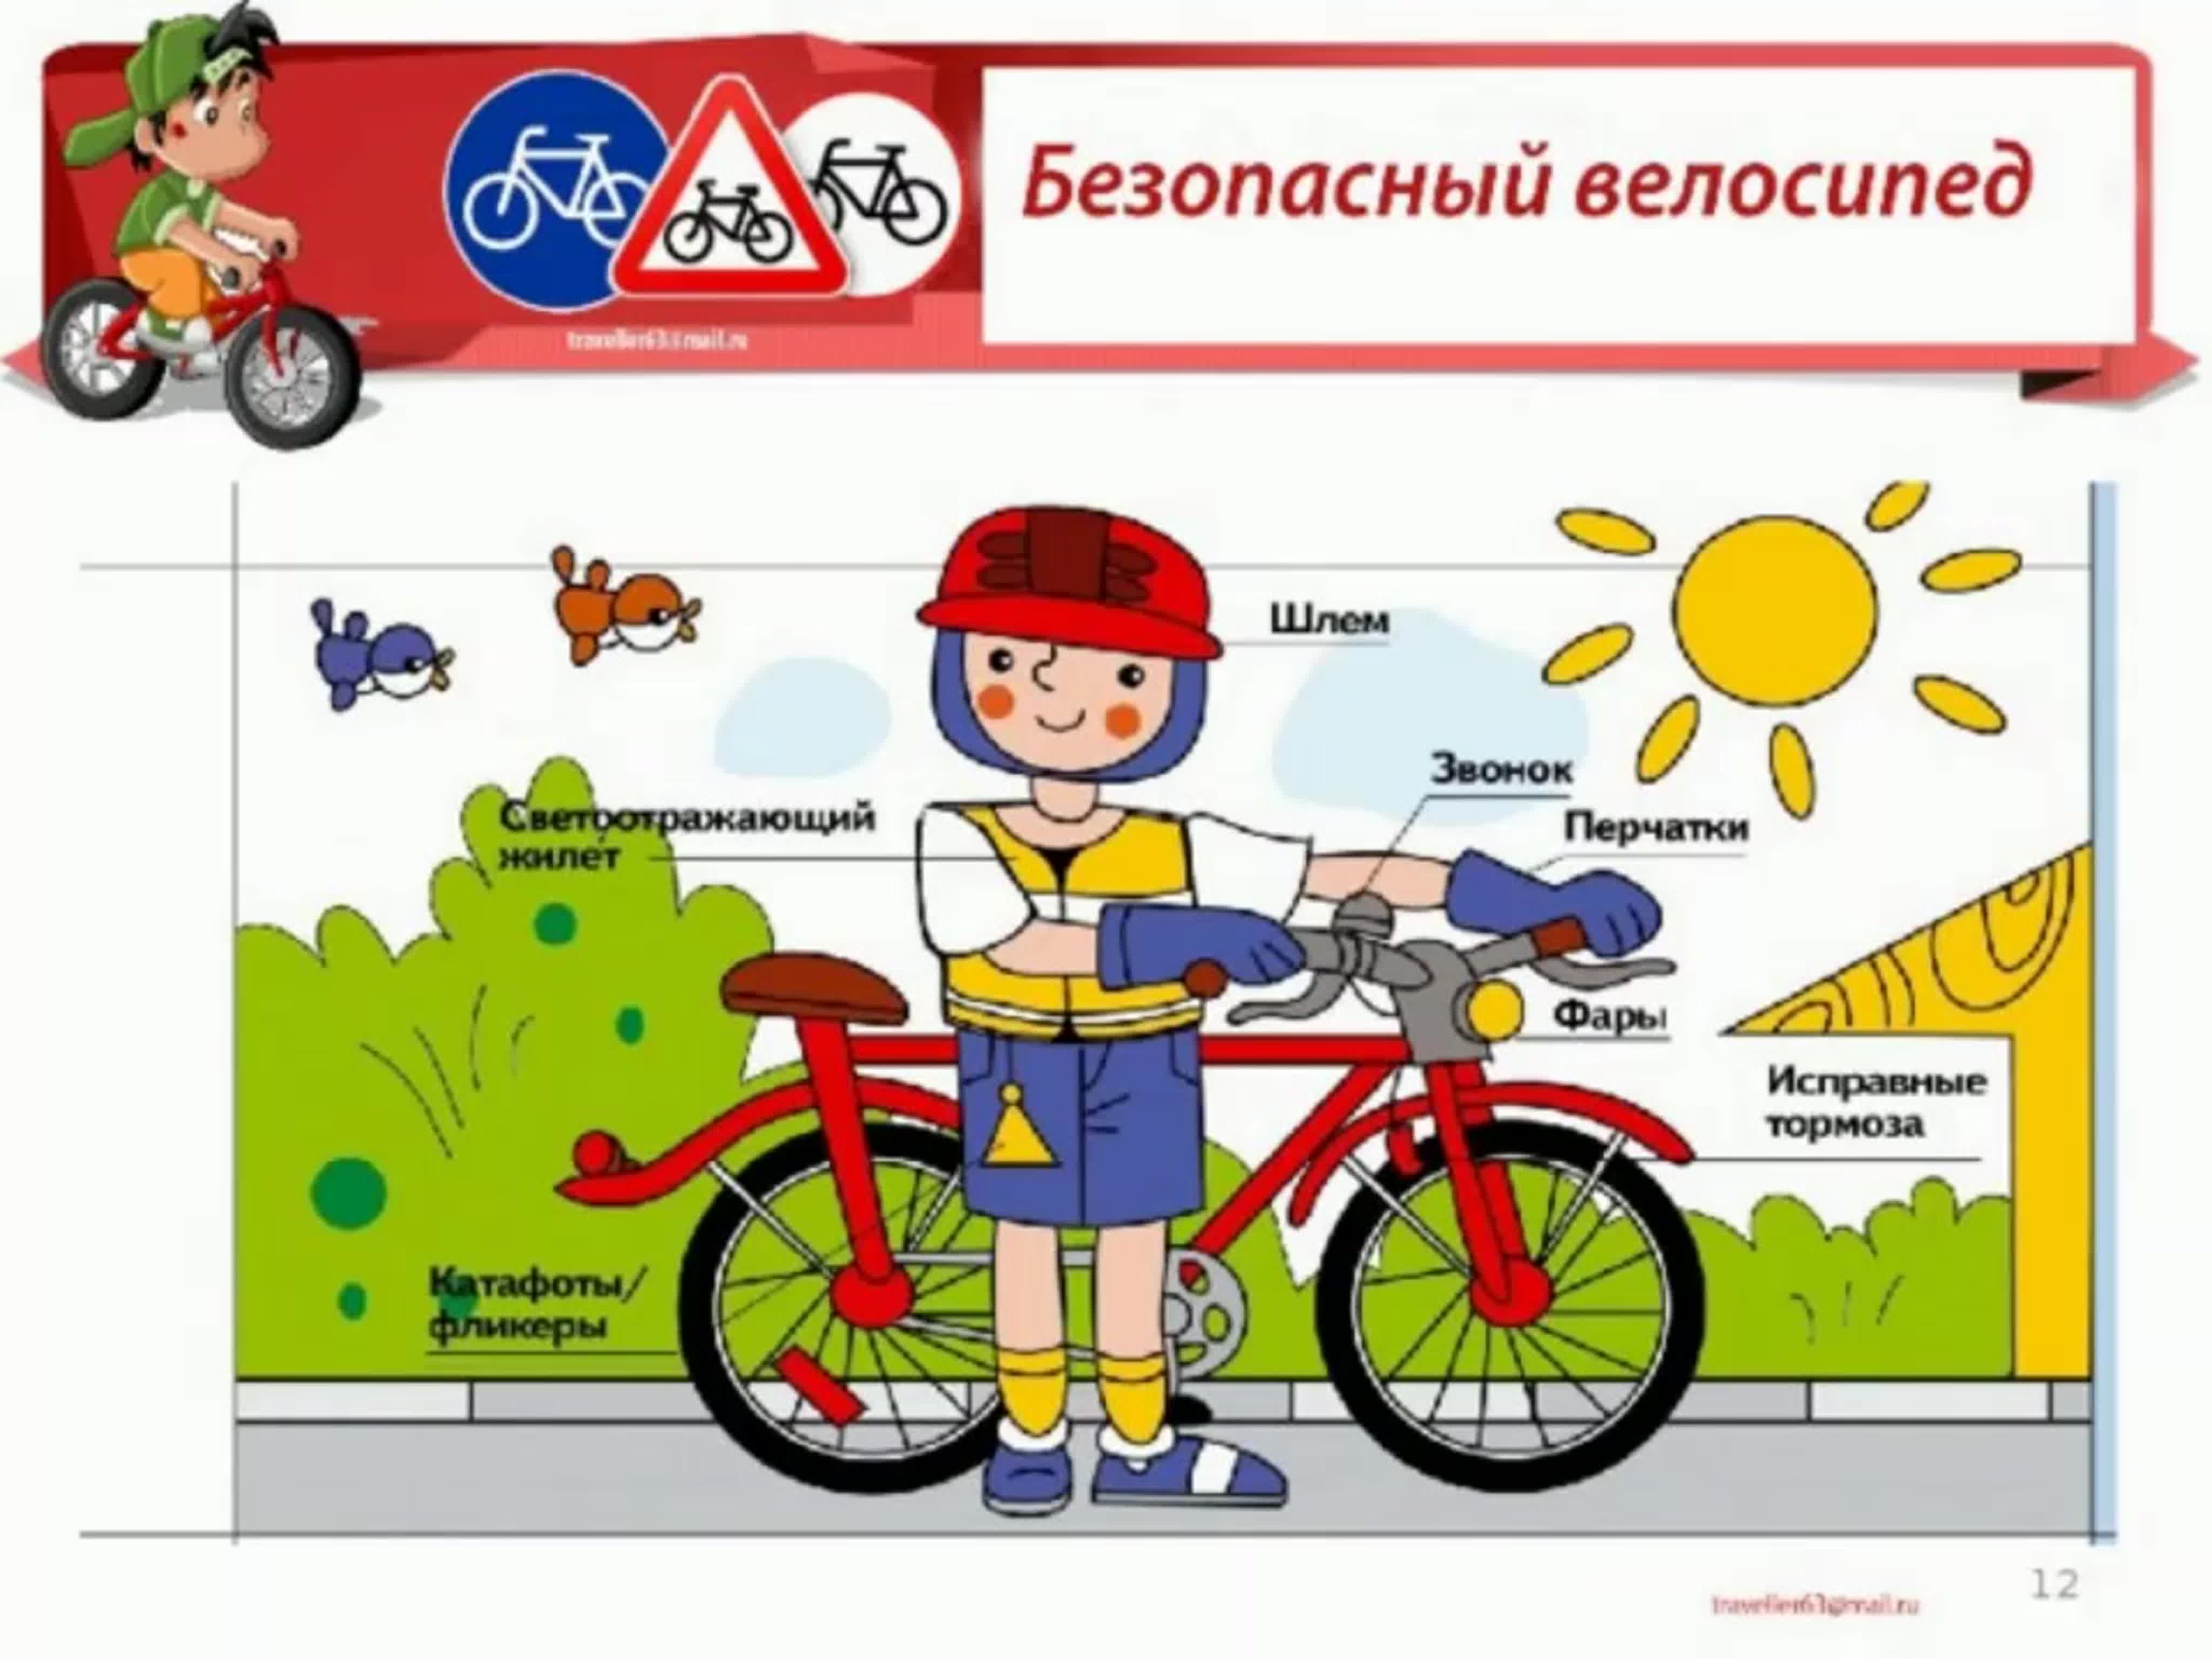 Госавтоинспекция напоминает, что вело-, мототранспорт – детям не игрушка!.